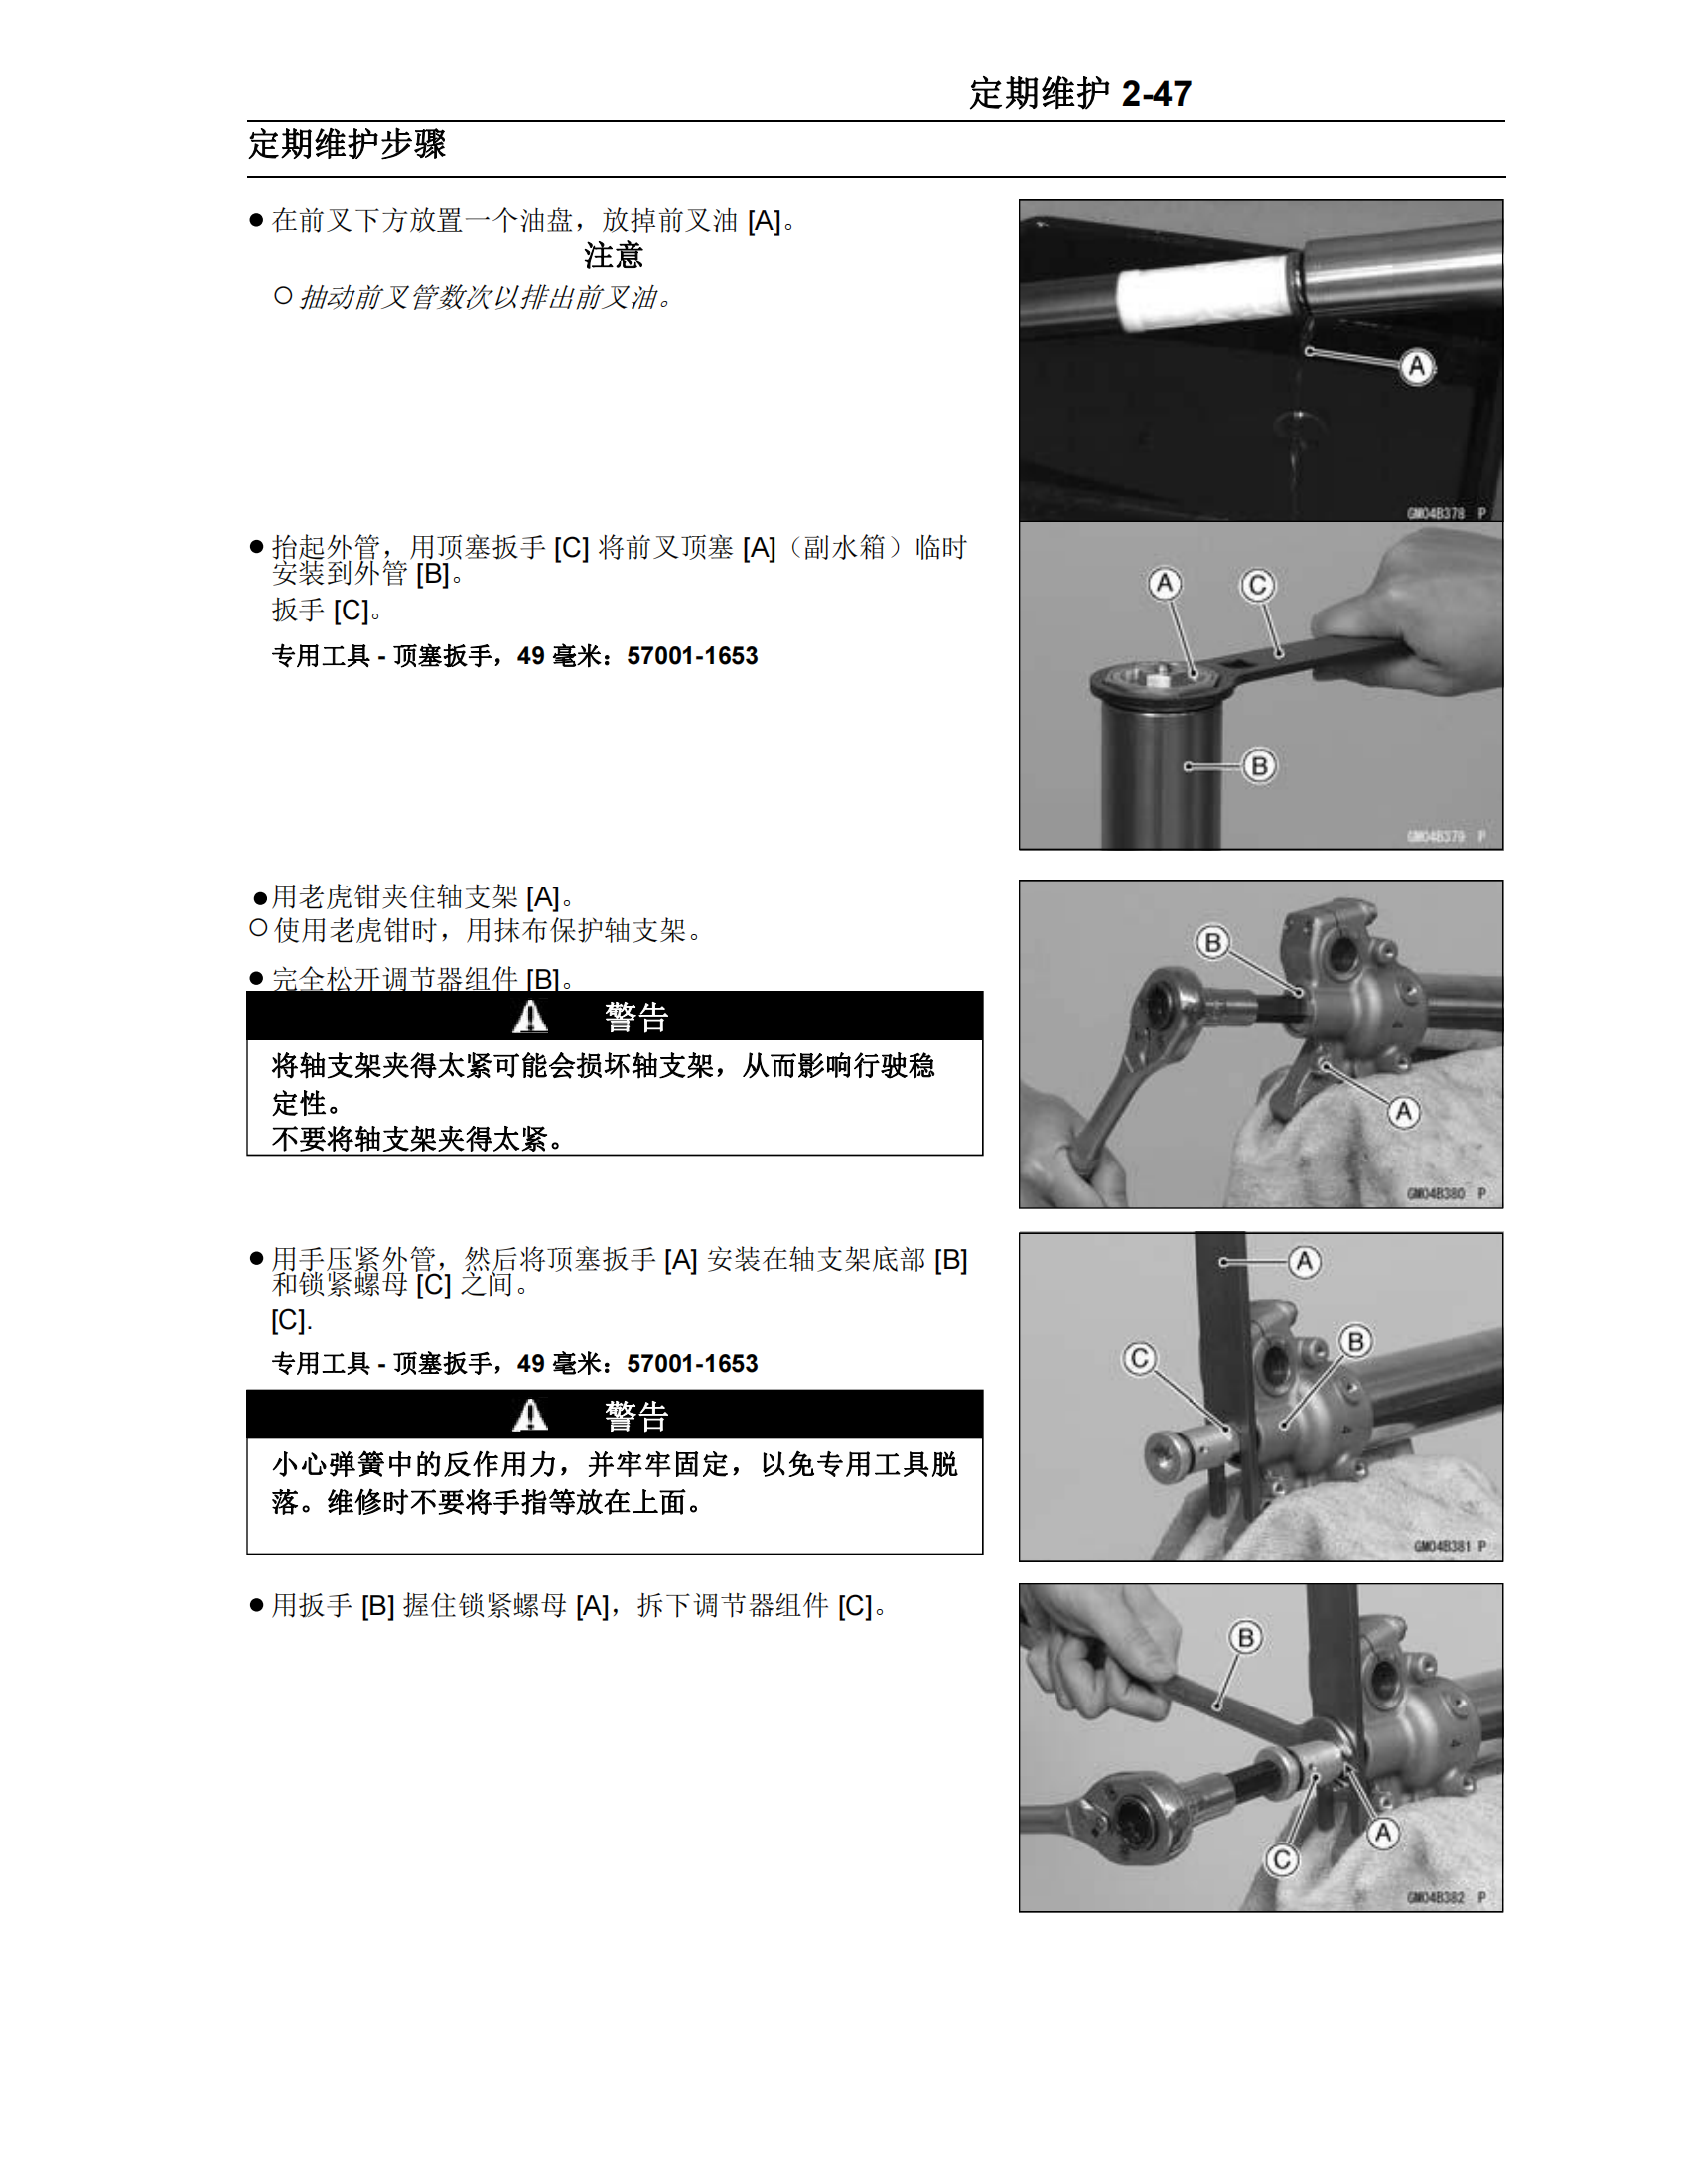 简体中文2006-2008年川崎kx450f维修手册kawasaki kx450f维修手册插图3